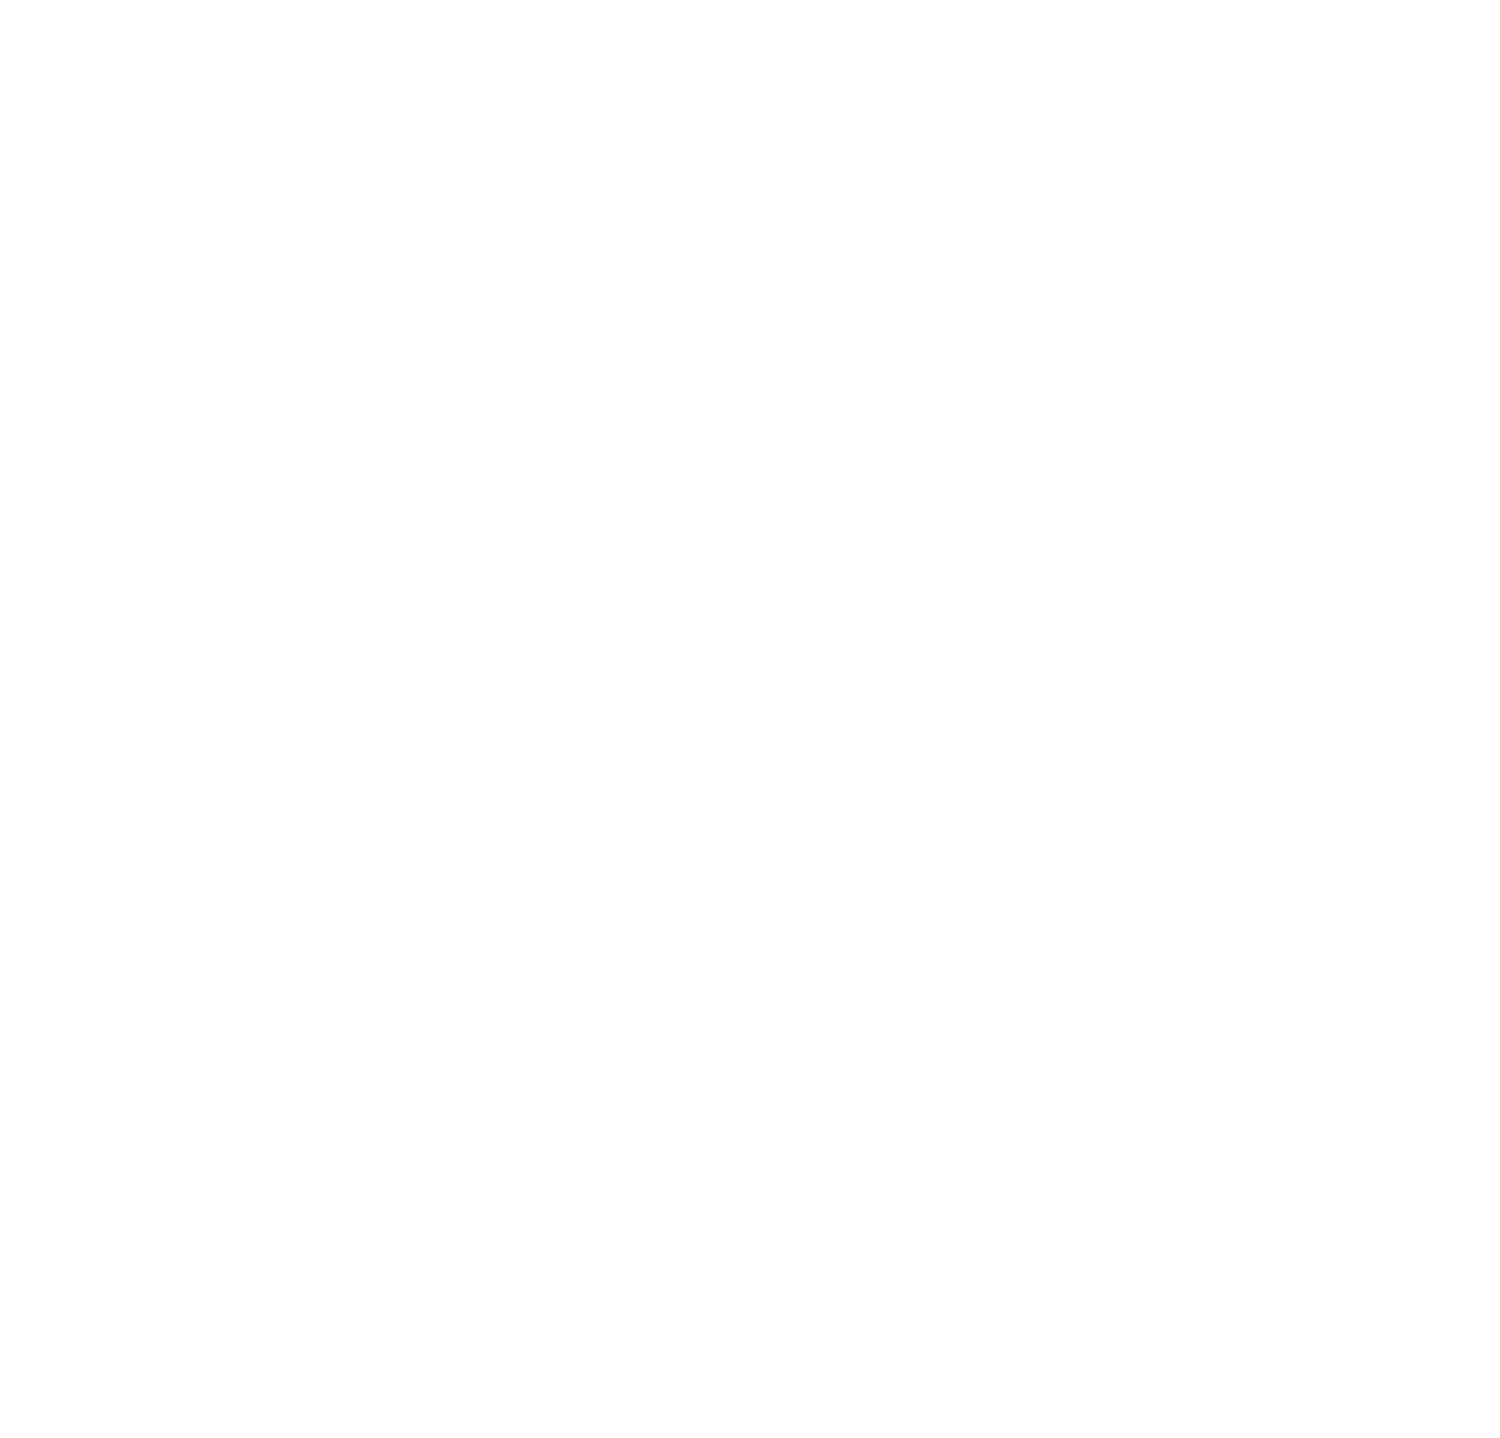 Firebird Optics